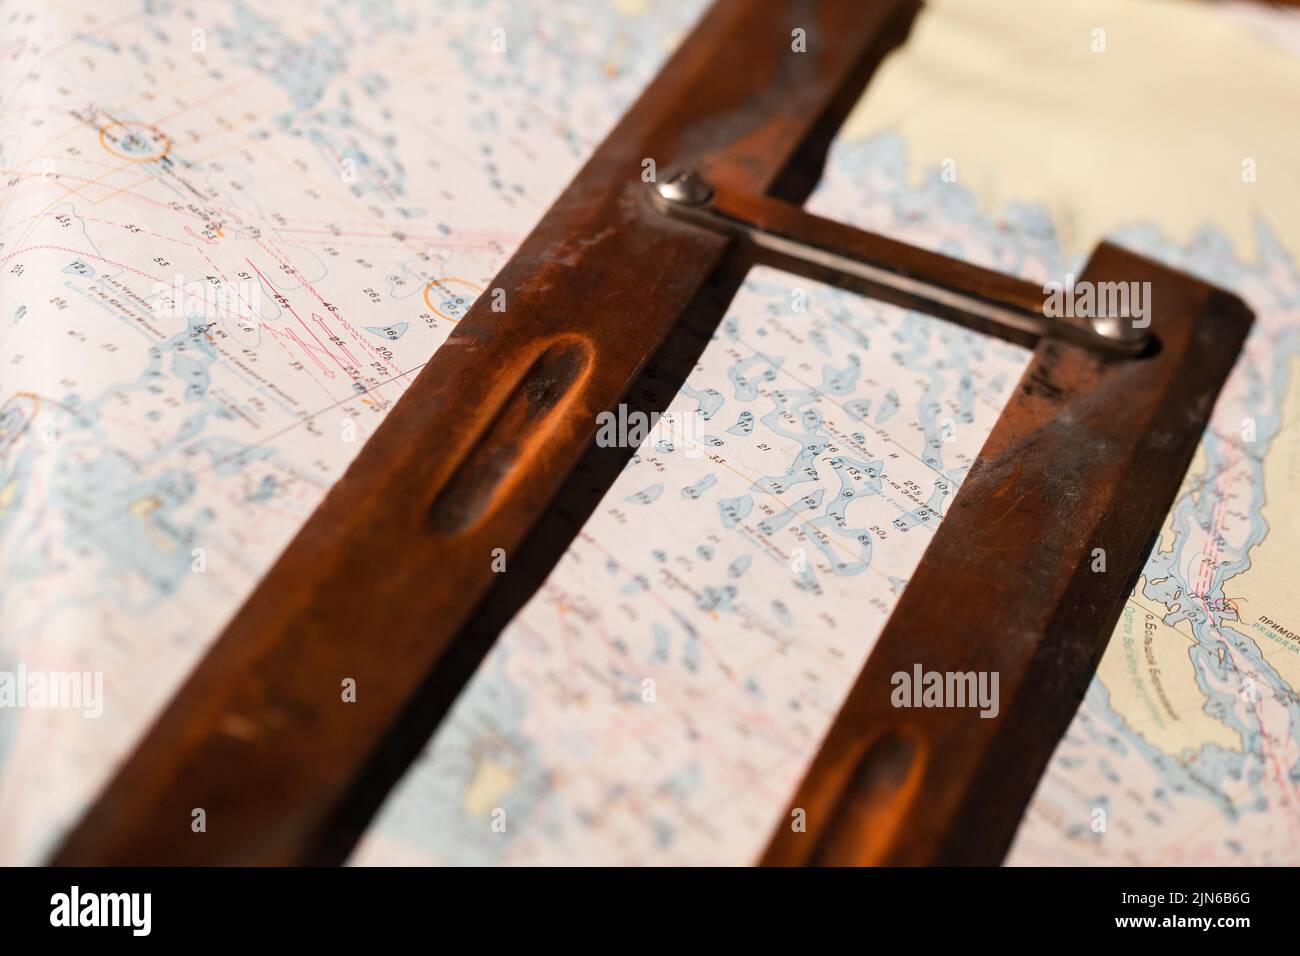 Règle parallèle en bois vintage sur une carte en papier marin. Il s'agit d'un instrument de dessin utilisé par les navigateurs pour tracer des lignes parallèles sur des graphiques Banque D'Images